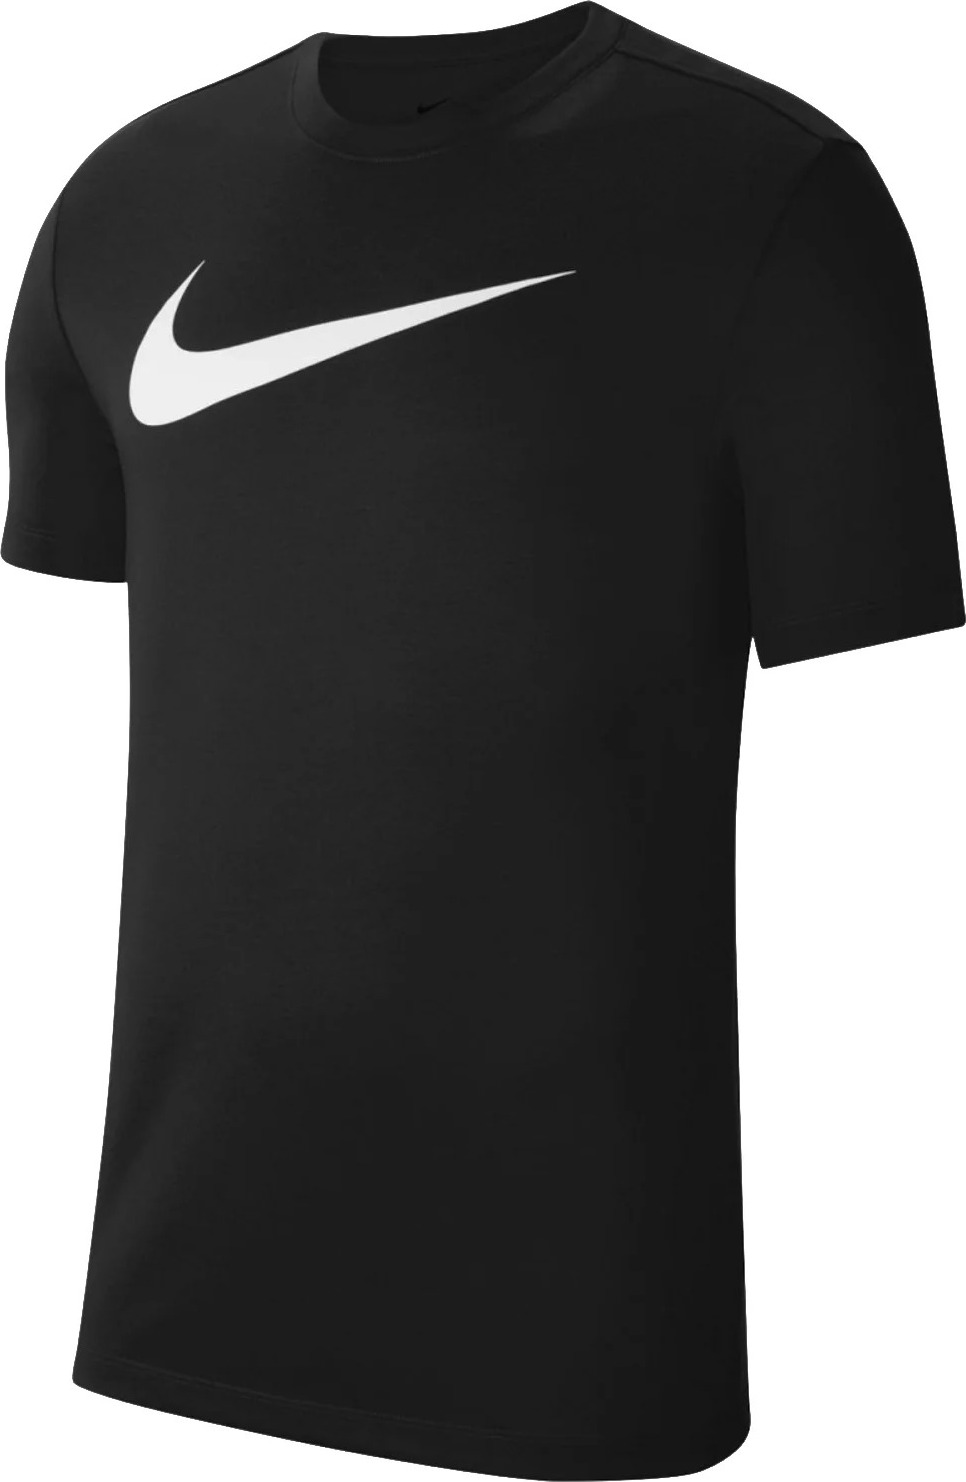 Čierne športové tričko Nike Dri-FIT Park Tee CW6936-010 Veľkosť: 2XL